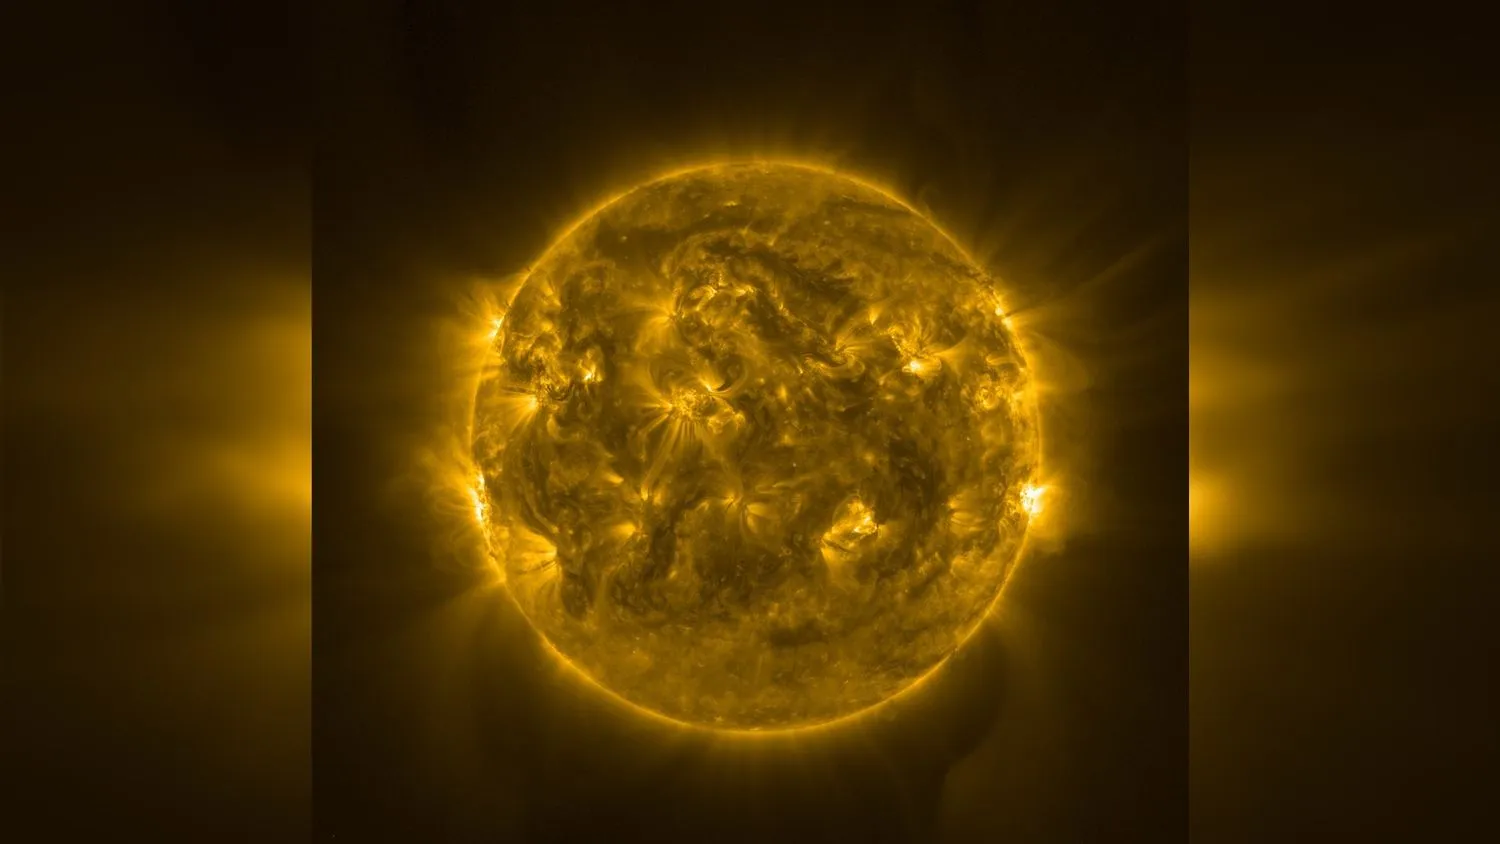 ein Foto der Sonne, das wirbelnde Feuerformationen auf ihrer Oberfläche zeigt